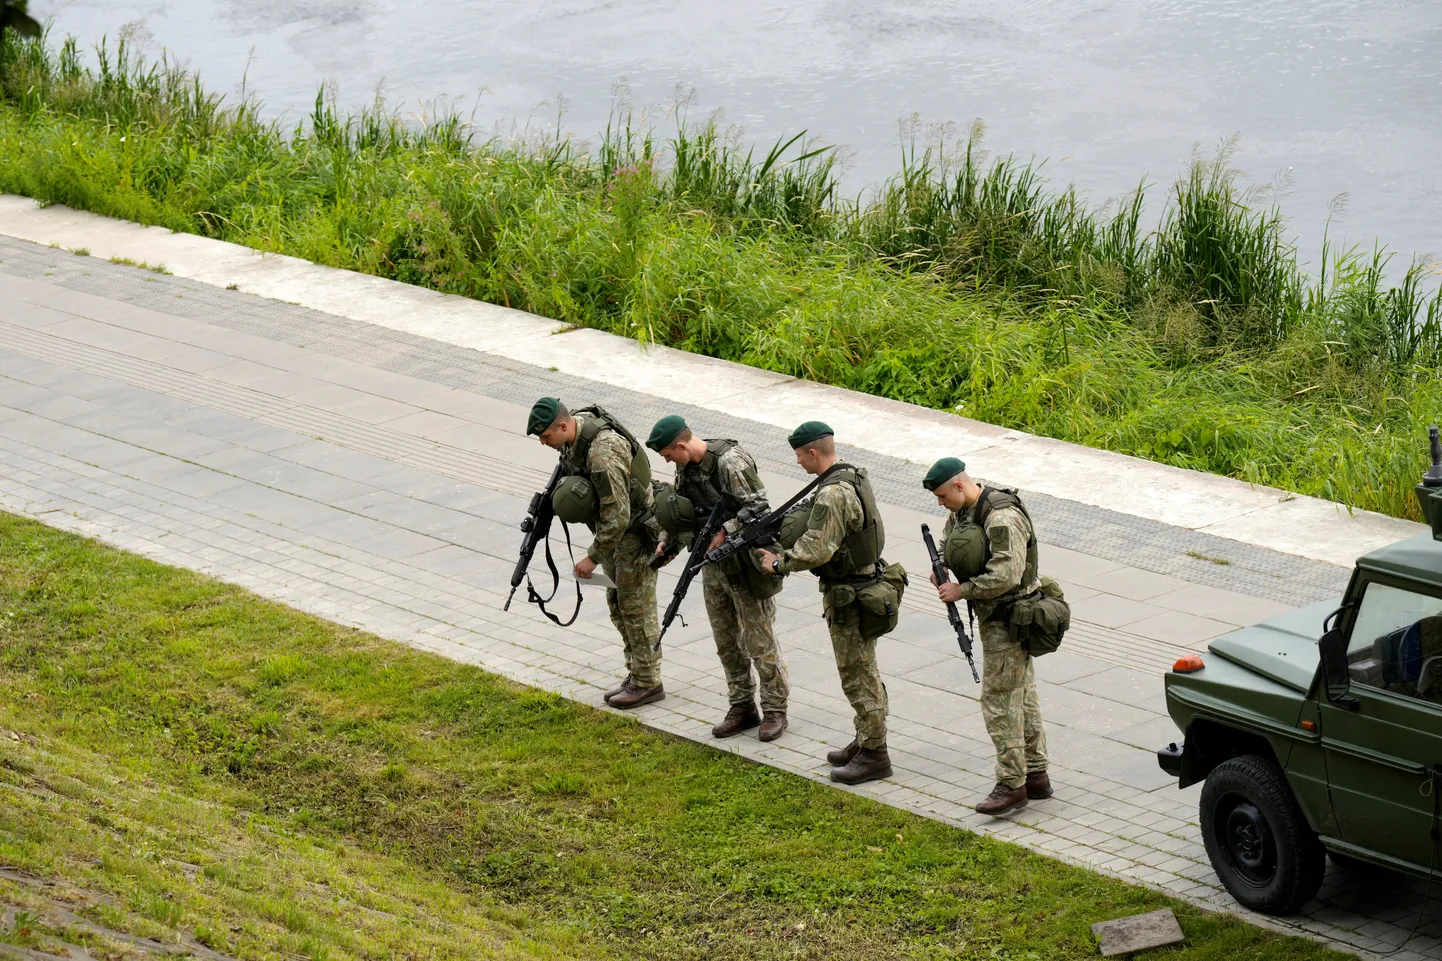 Leedu sõjaväelased Vilniuses patrullimas.